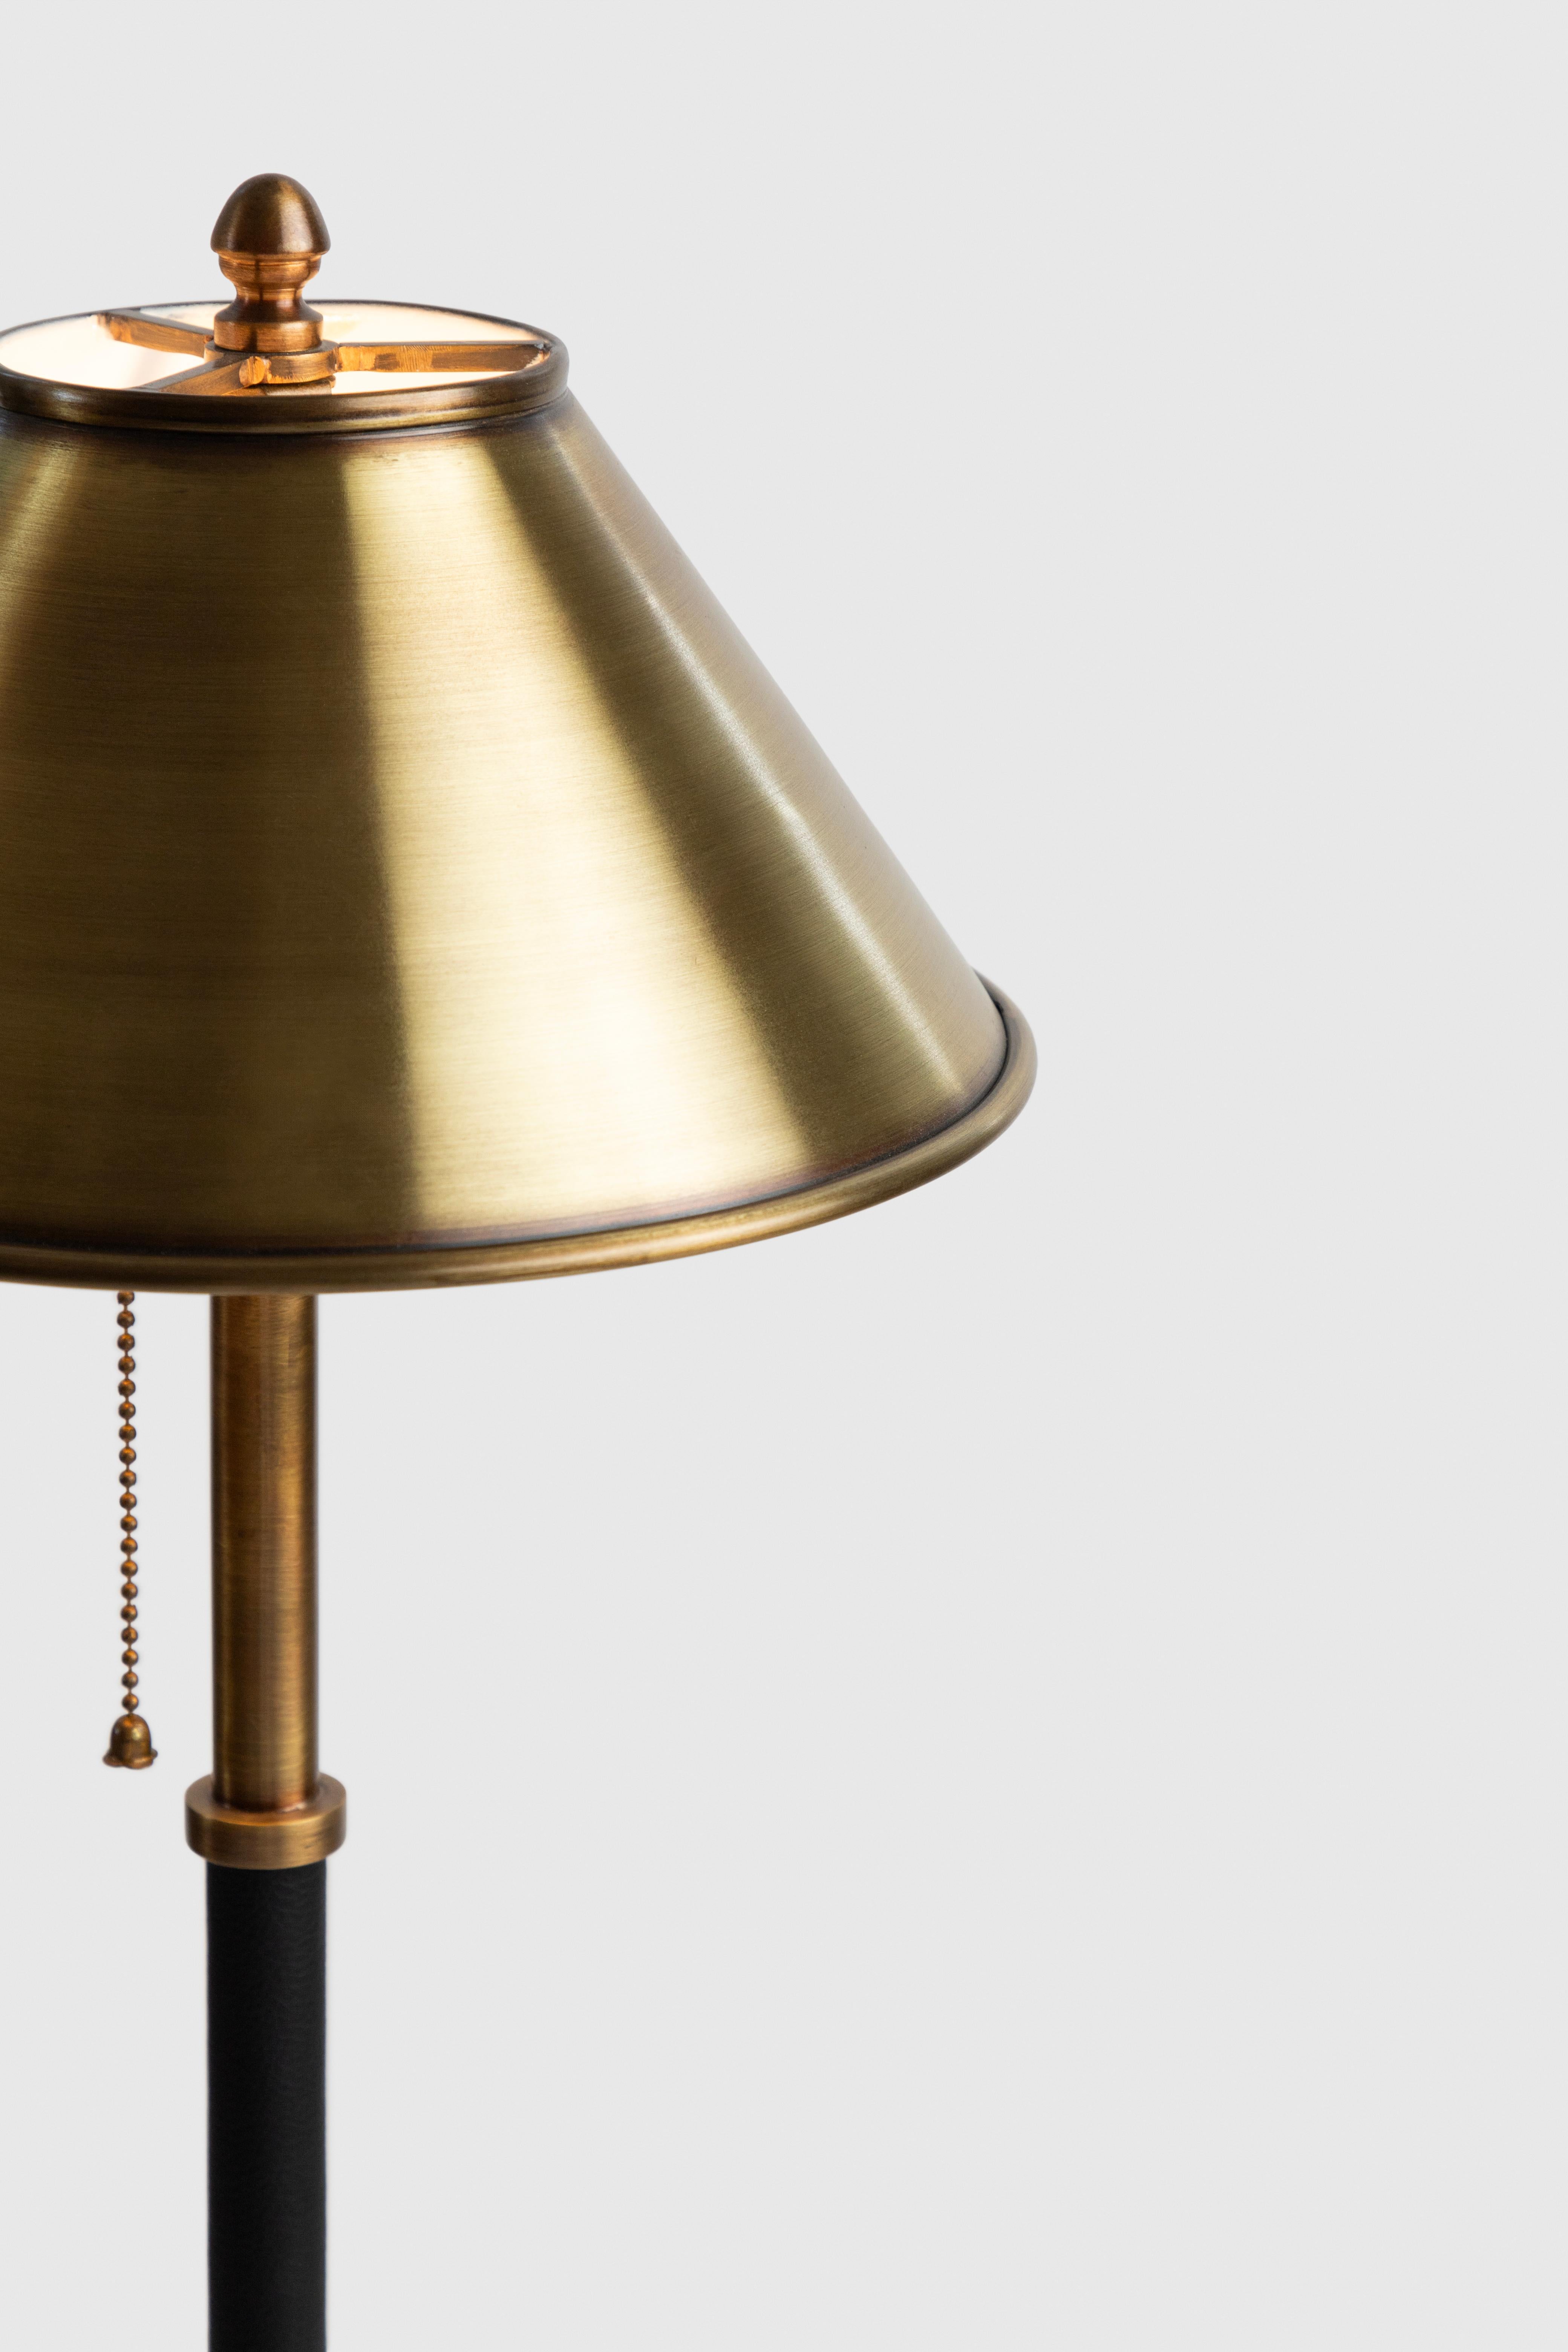 Lampe de table Vendôme,
Bronze forgé avec détails en cuir par des artisans de Mexico. 
Il présente des proportions uniques, réalisées avec le plus grand souci du détail.